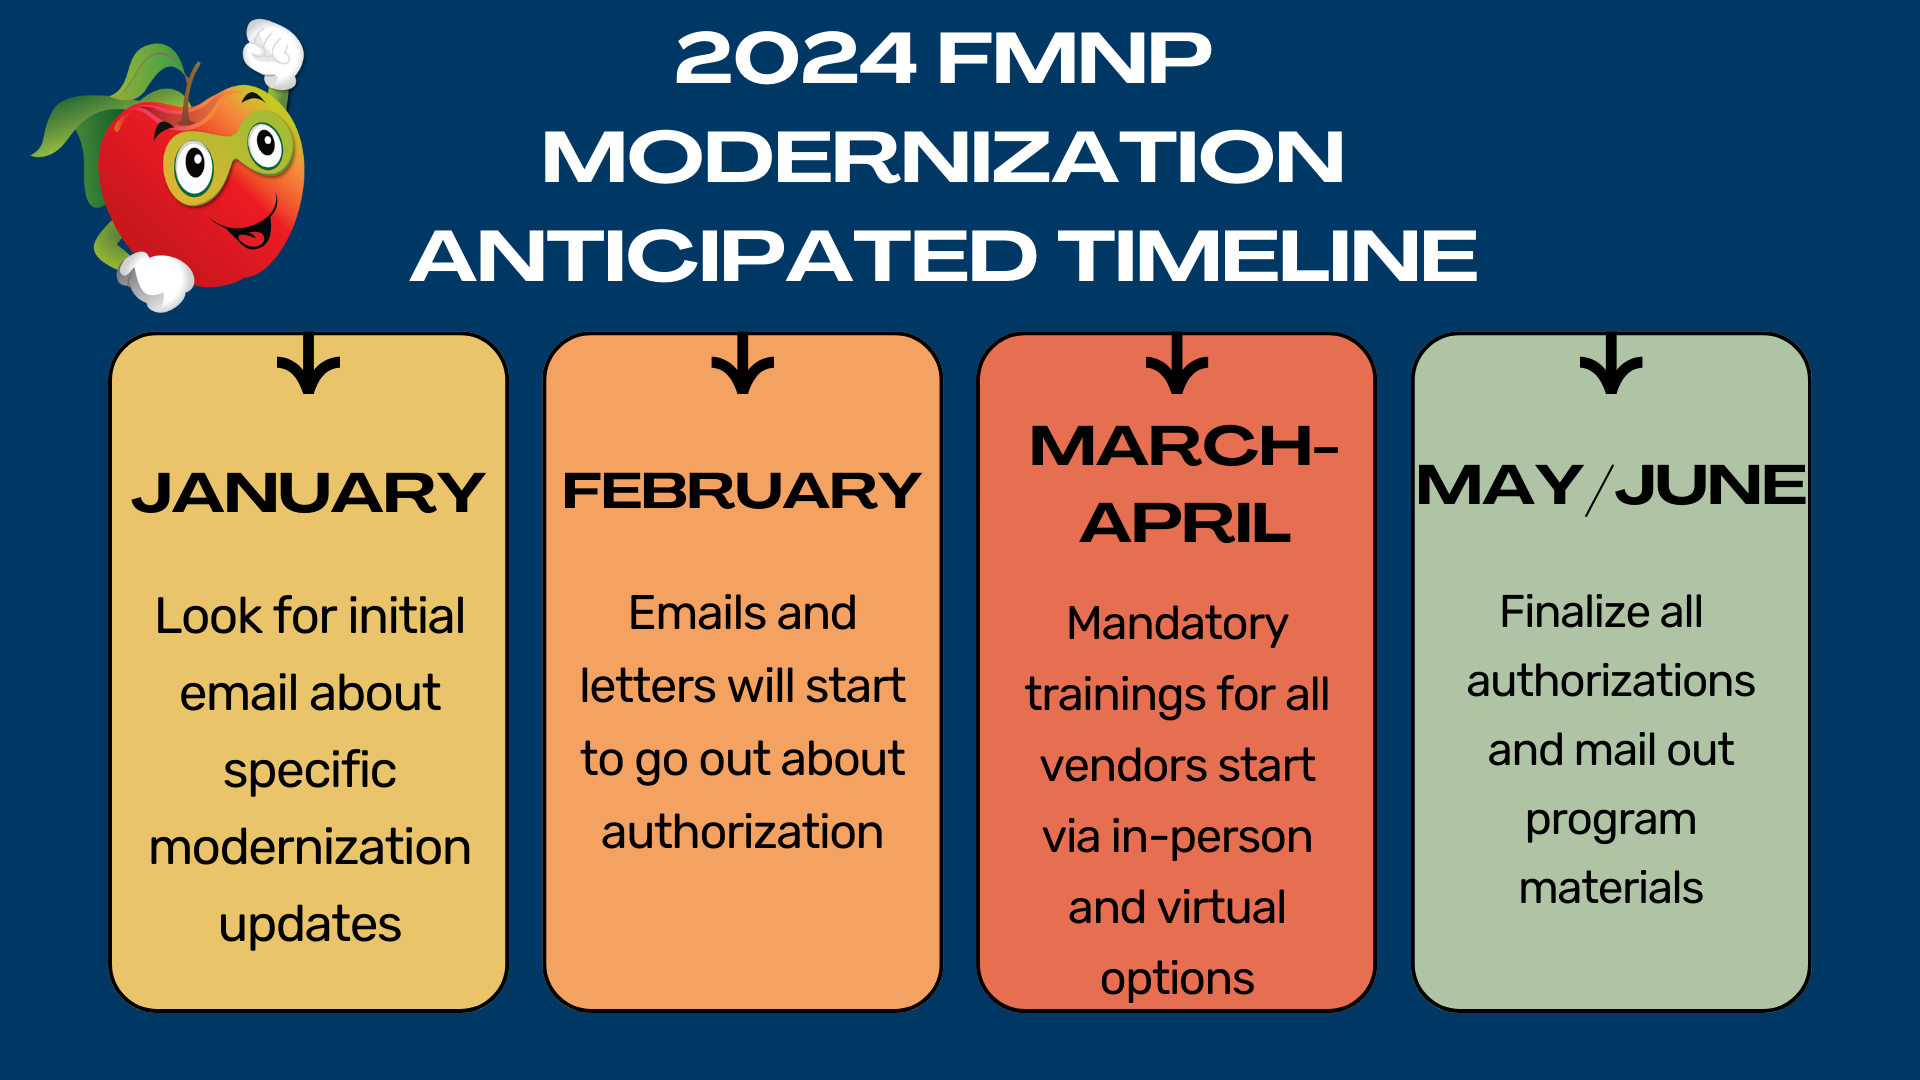 FMNP Modernization anticipated timeline - details below